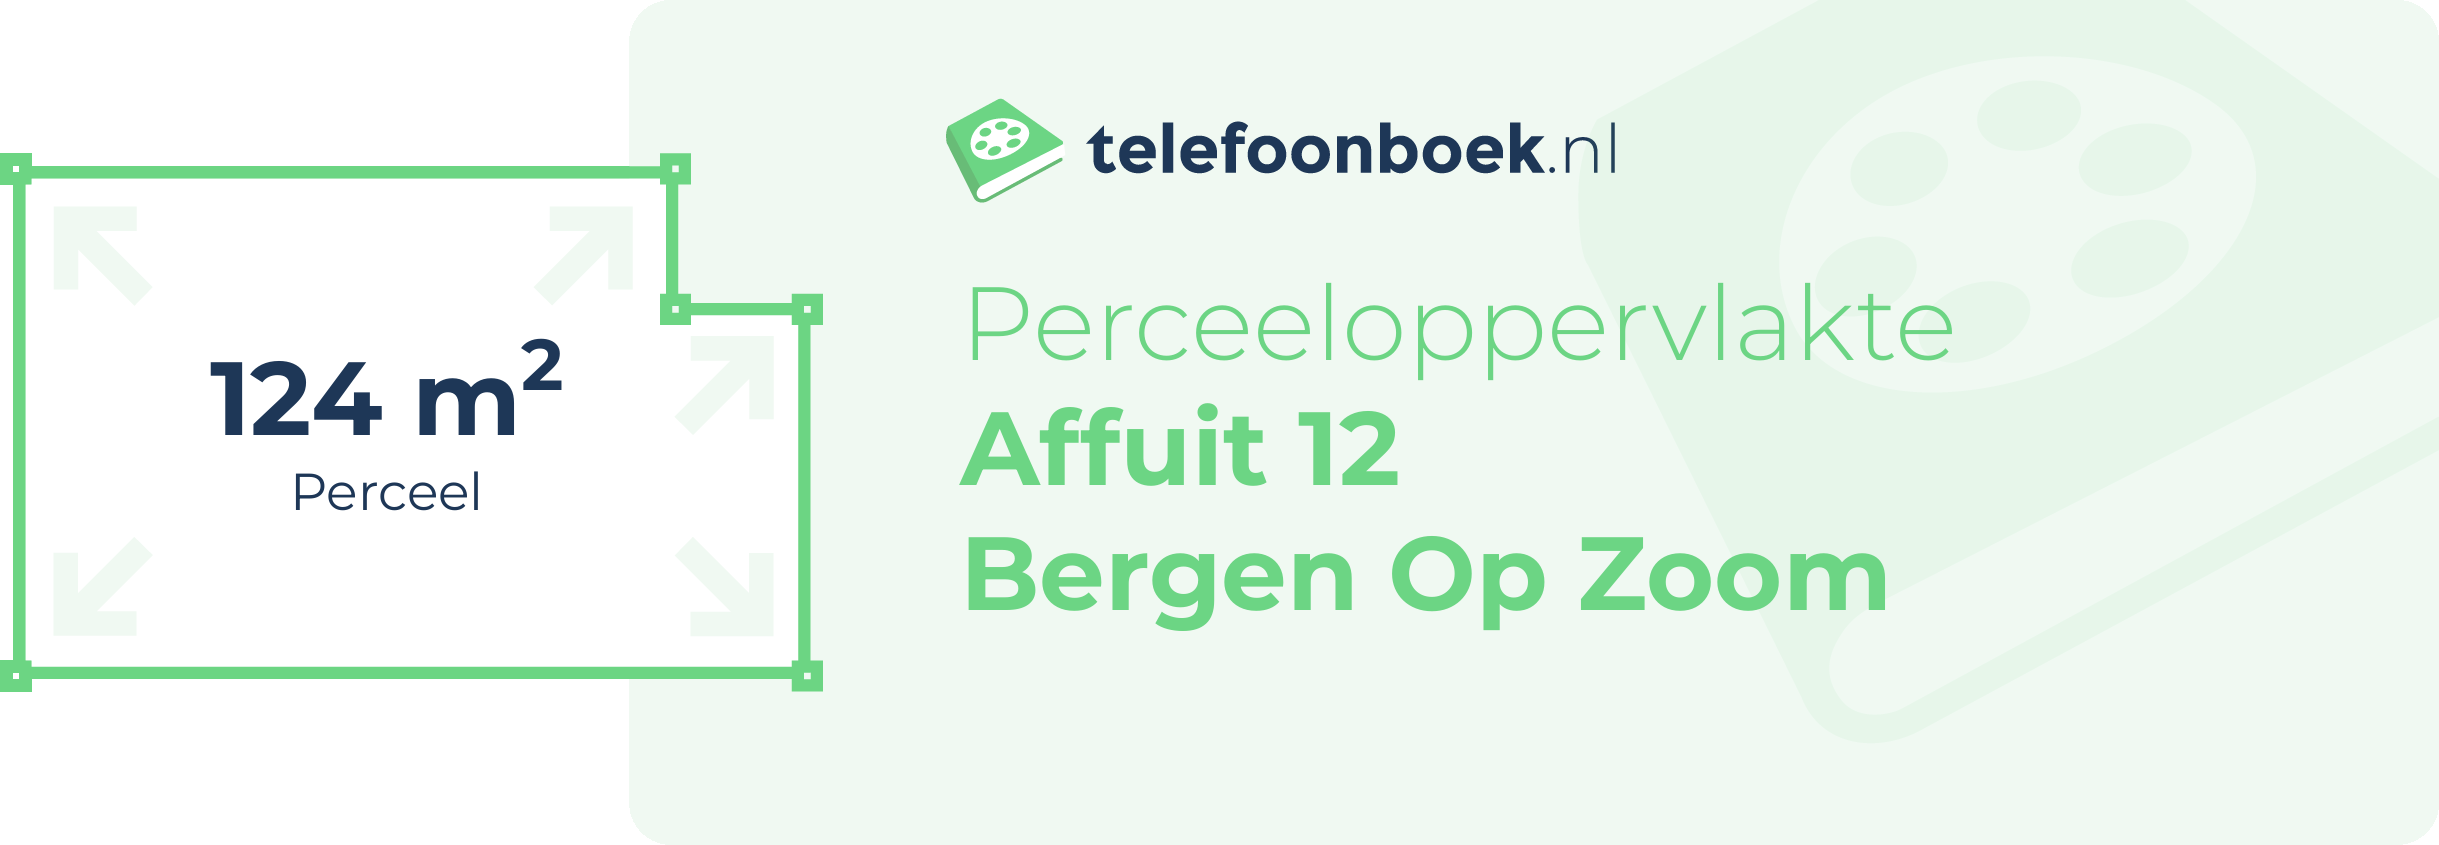 Perceeloppervlakte Affuit 12 Bergen Op Zoom